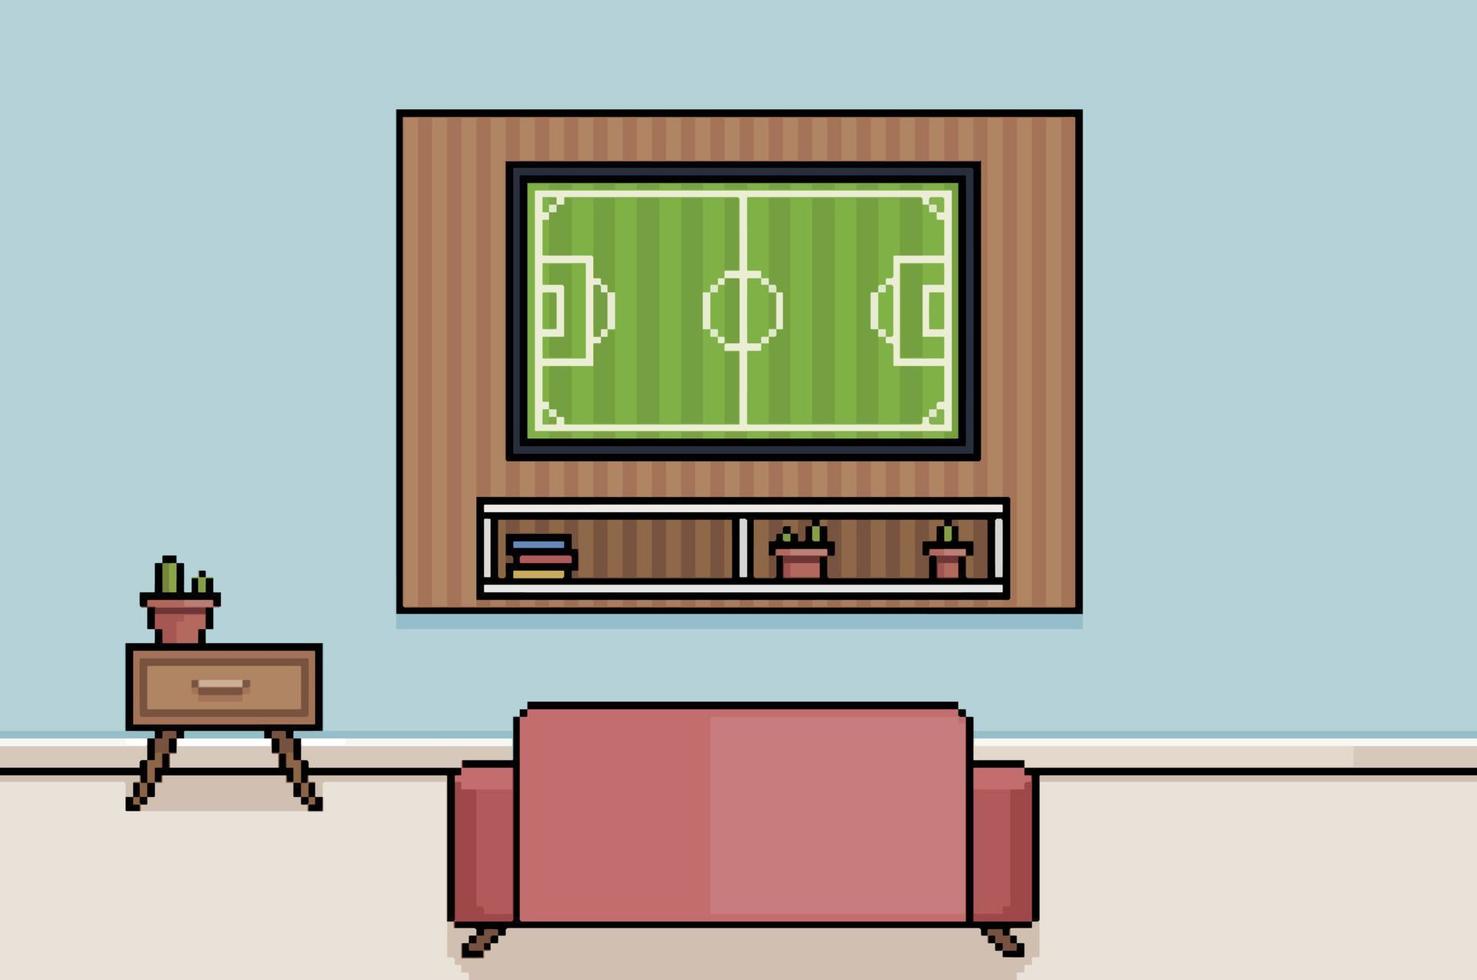 pixel art fußballweltmeisterschaft im fernsehraum gucken. 8-Bit-Hintergrund mit Sofa, Tisch und Fernseher und Dekorationen vektor